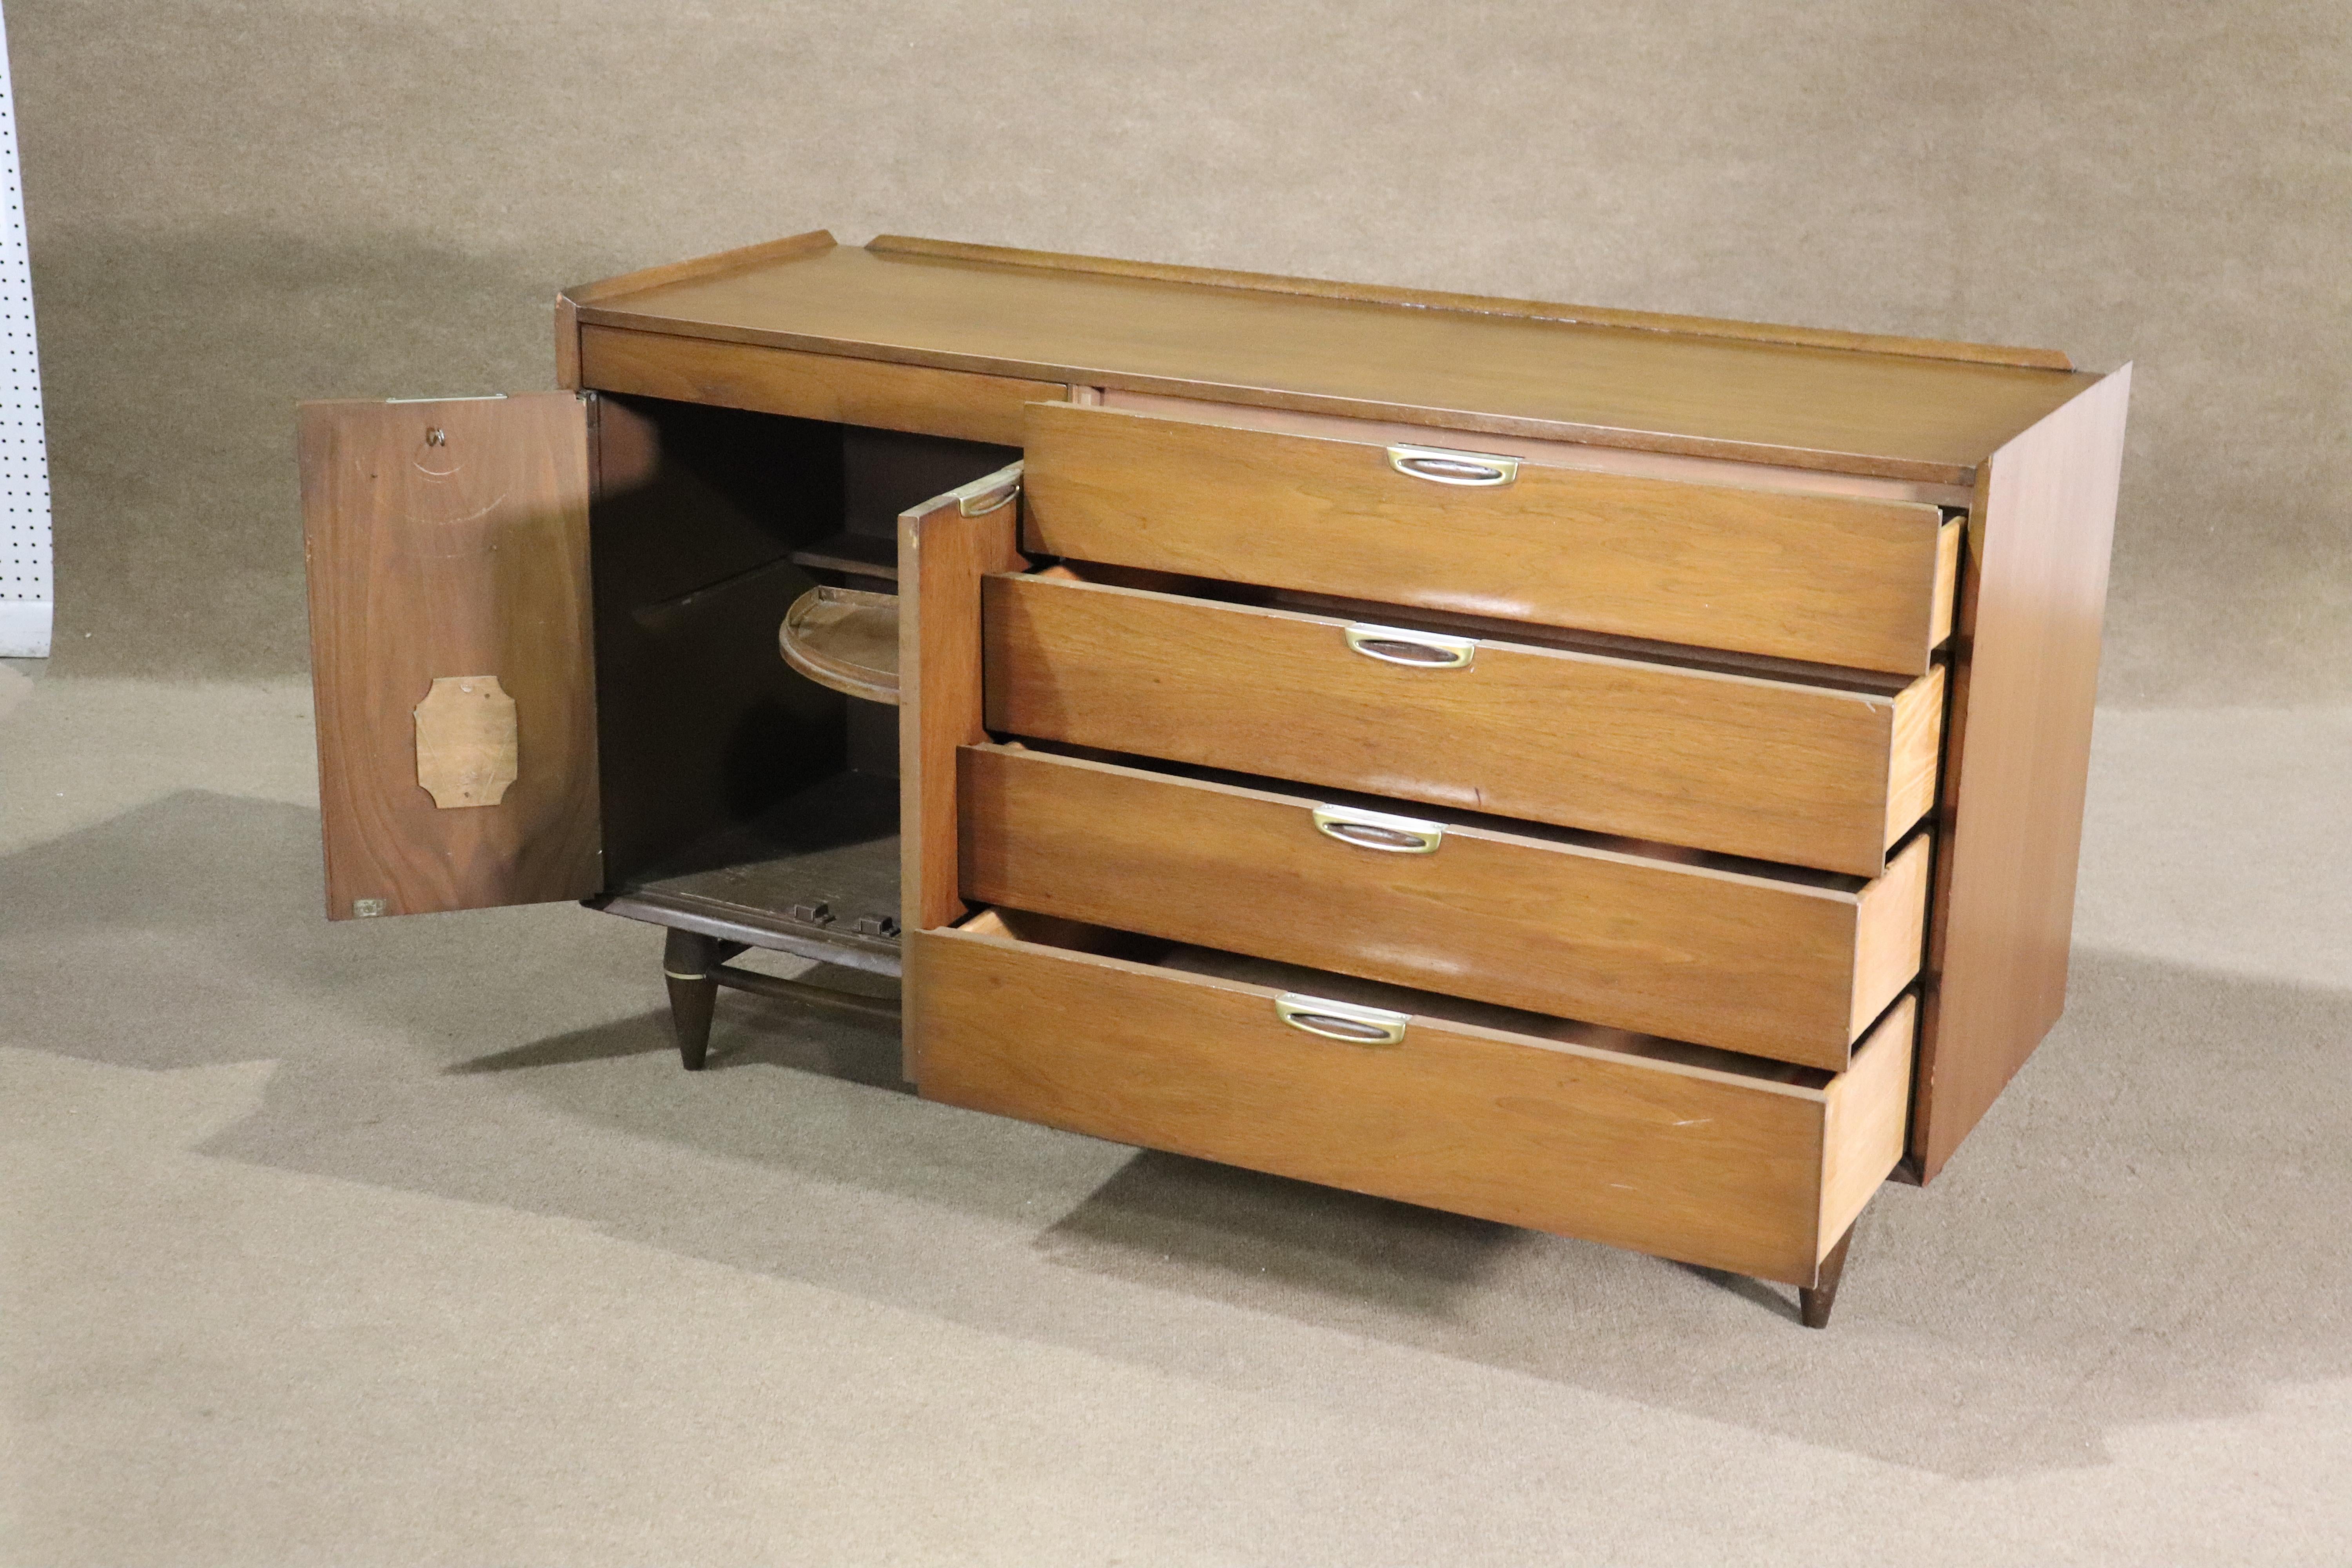 Bassett Furniture Mid-Century modern credenza mit Schrank und Schublade Lagerung. Hergestellt für die Serie 